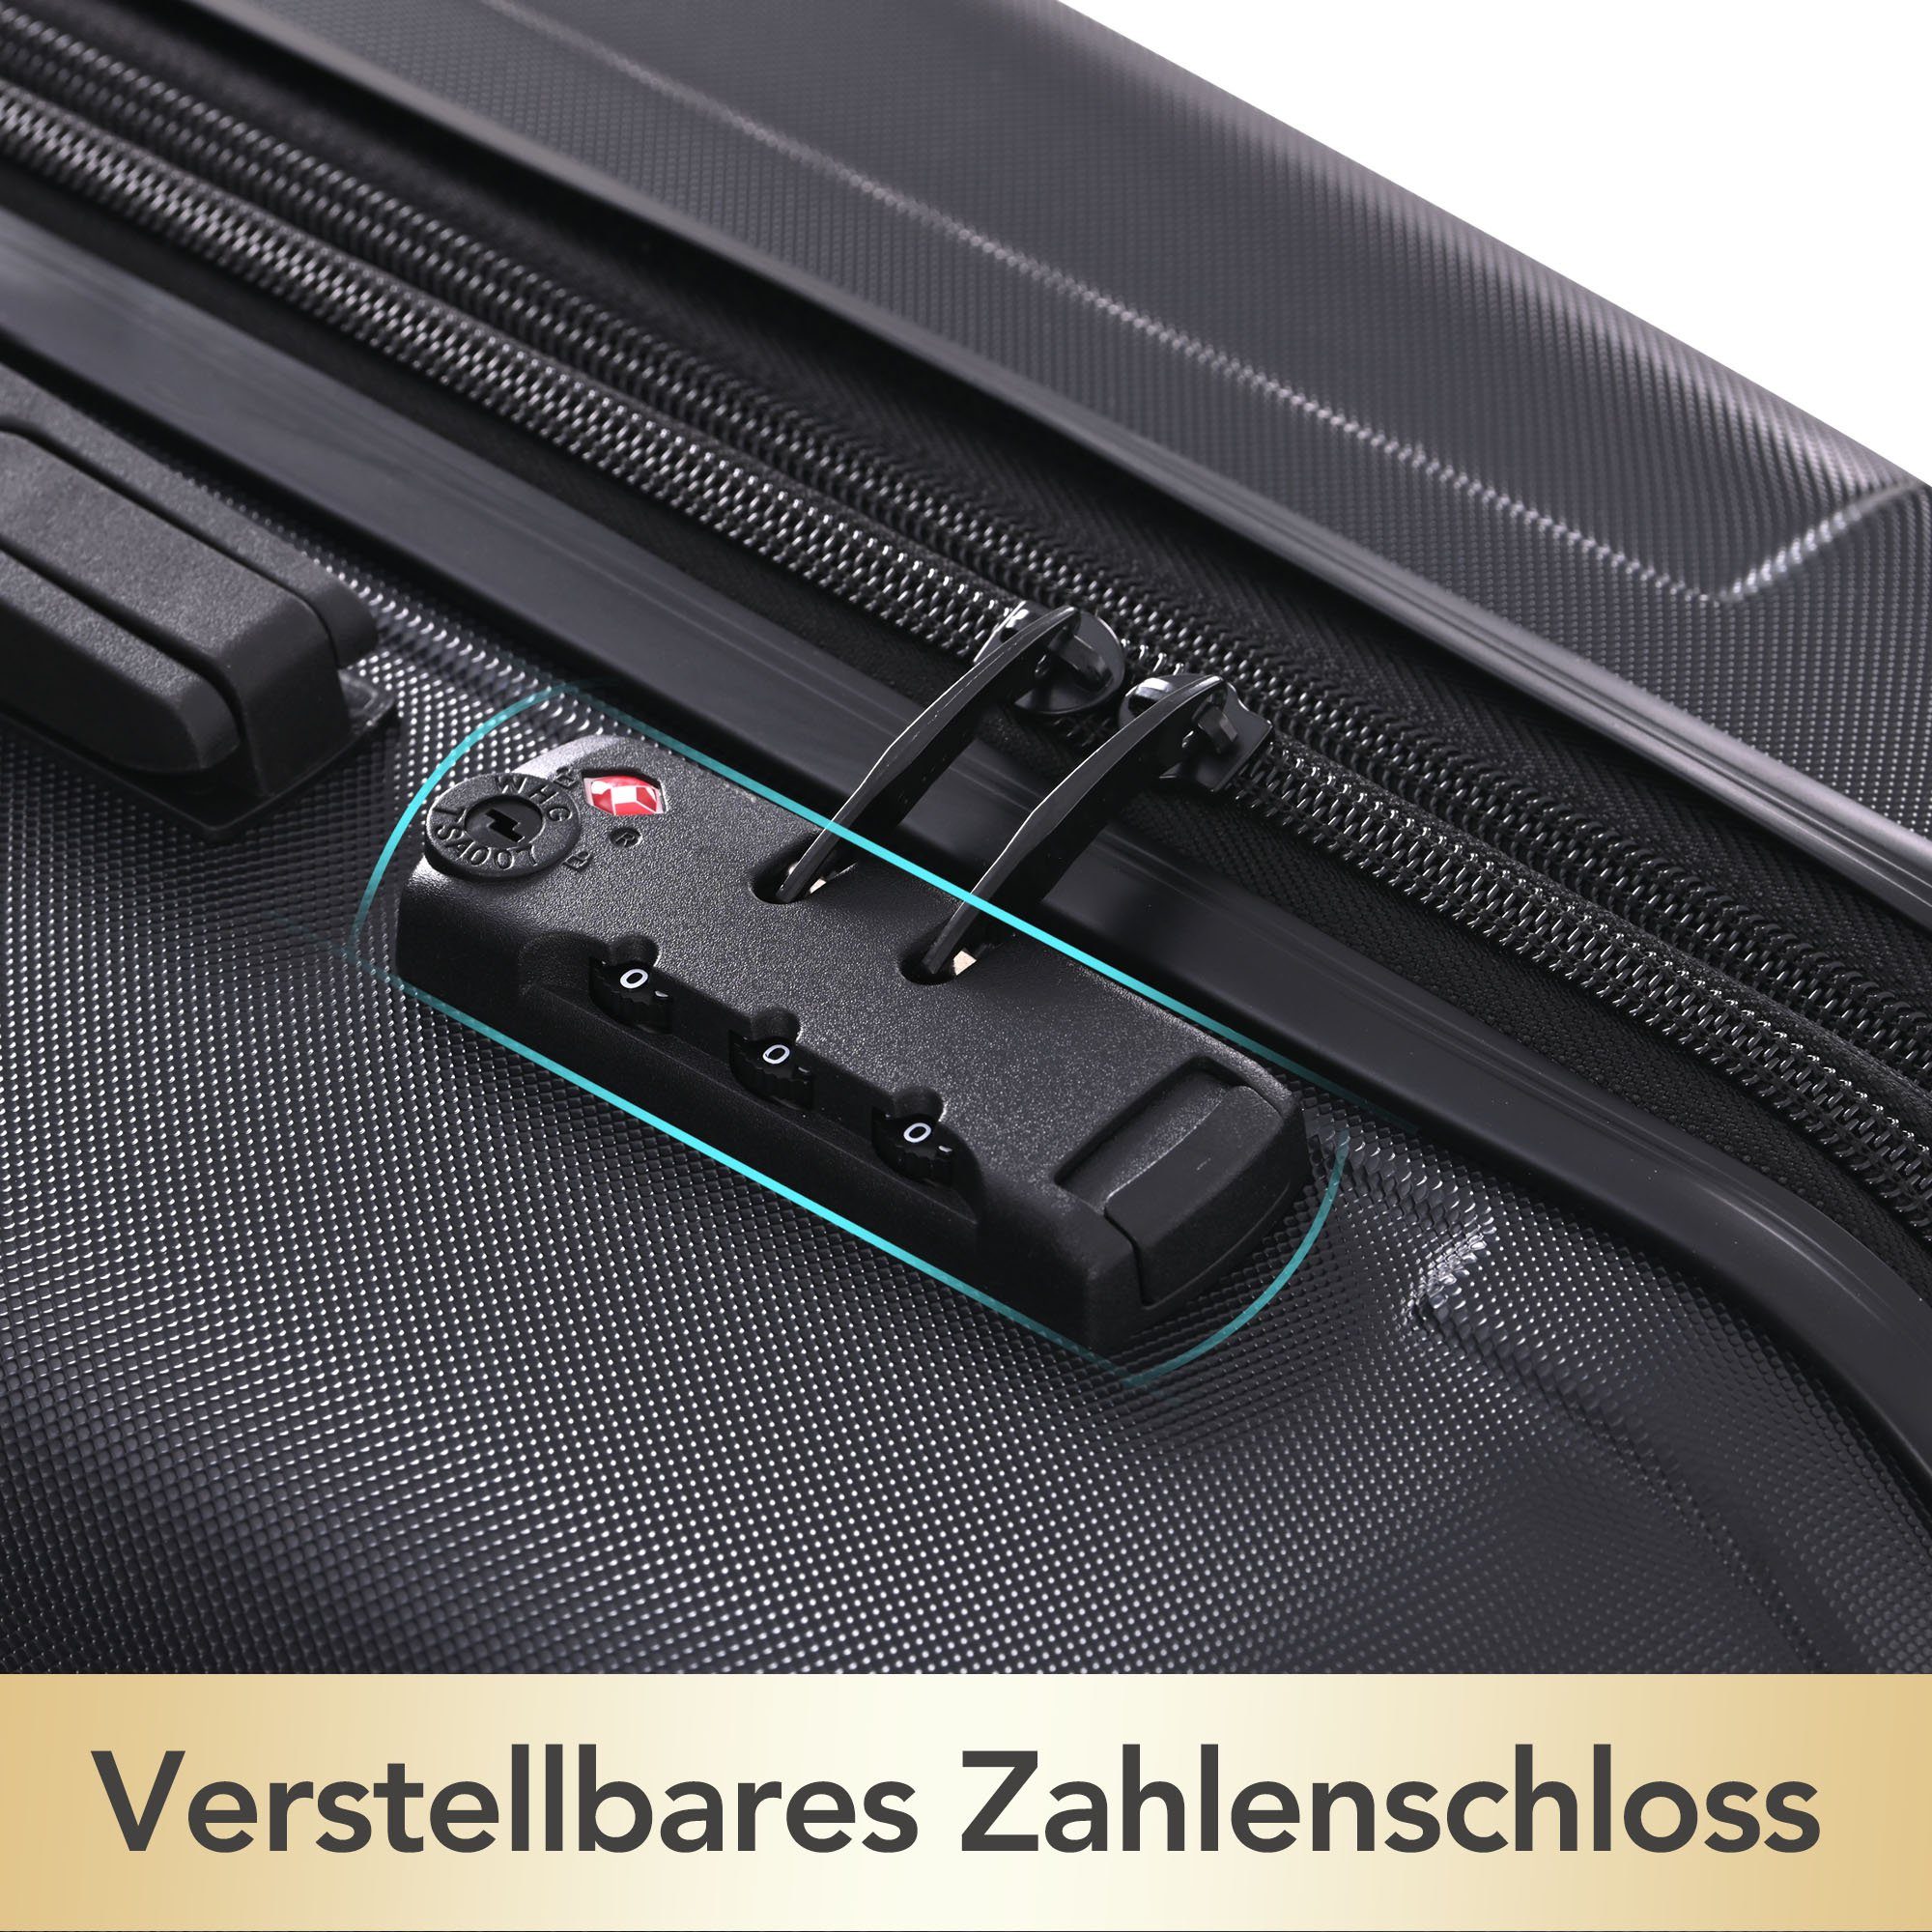 Schwarz Handgepäckkoffer für Universalrad Hartschalen-Handgepäck ABS-Material, Doppelrad, TSA-Schloss WISHDOR Mit mehr Sicherheit